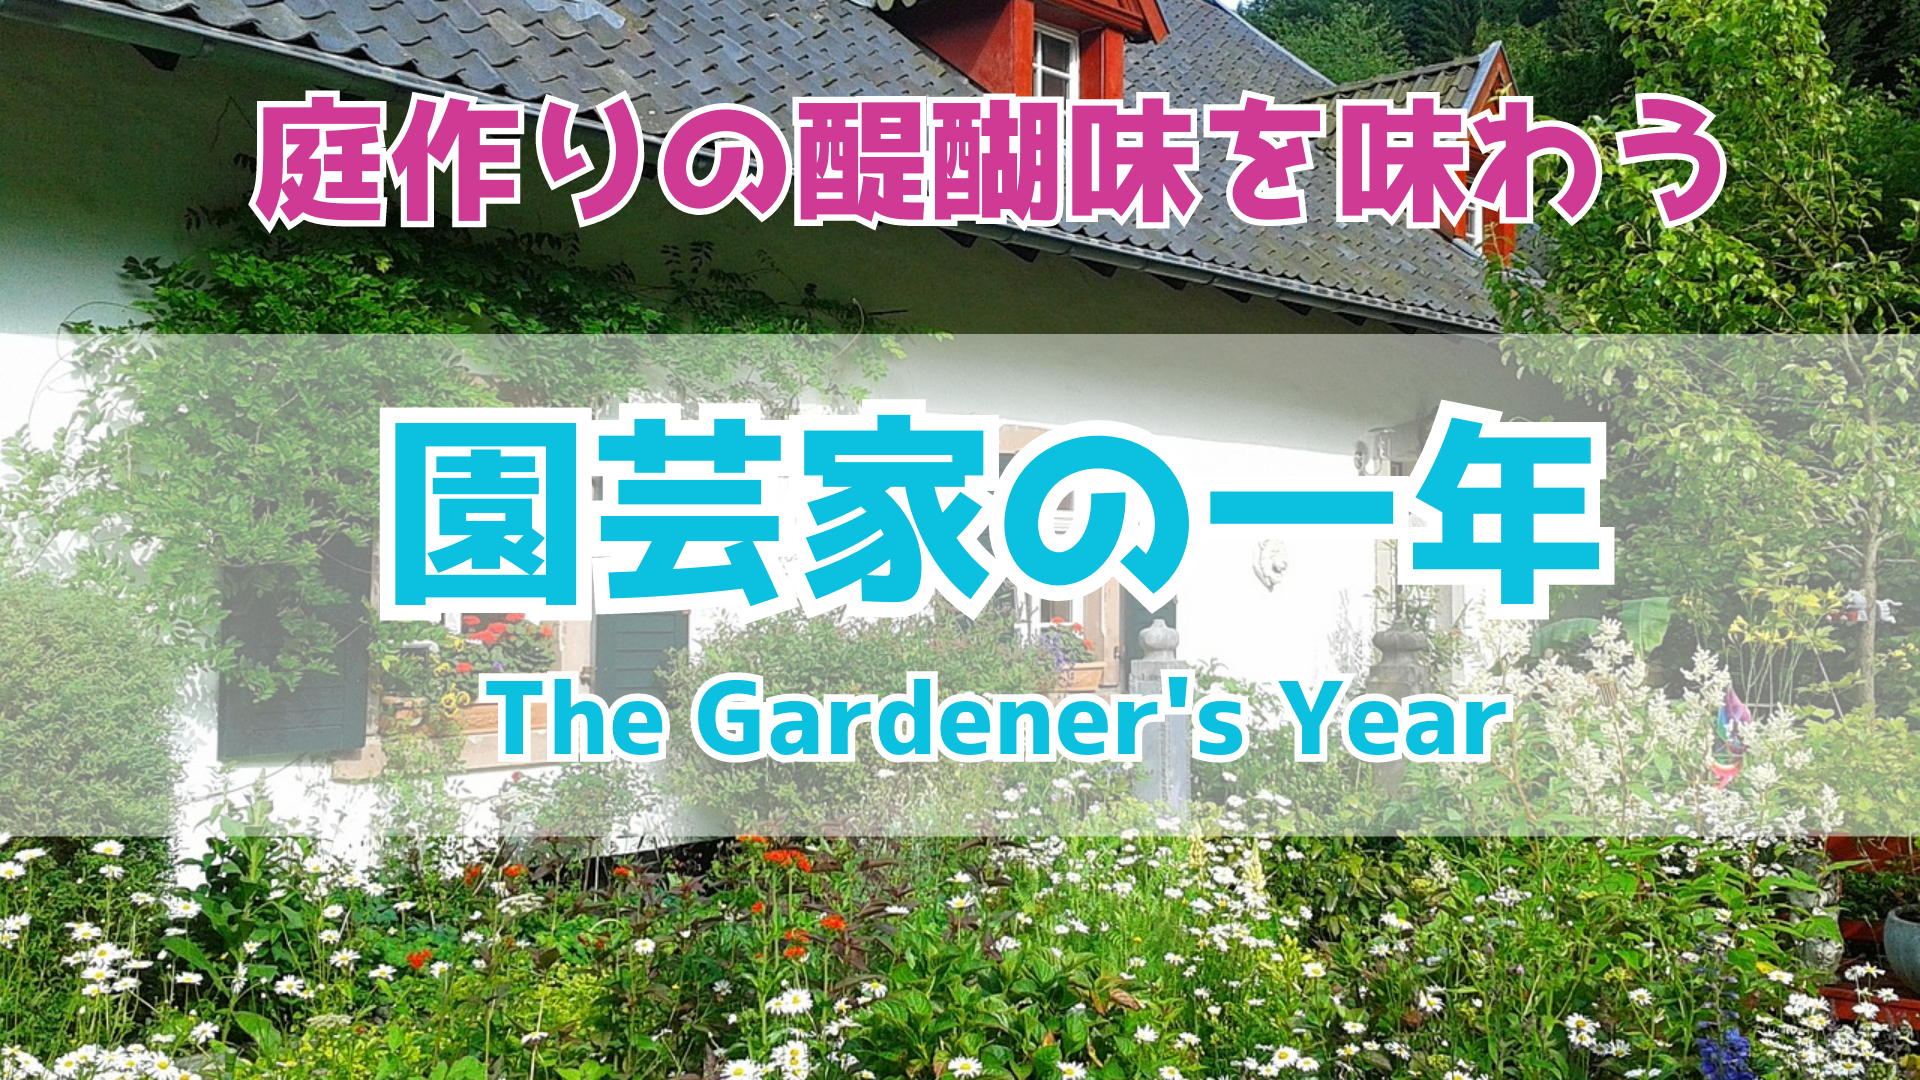 『園芸家の一年』: Kindleで読むべき最高の庭作りガイド